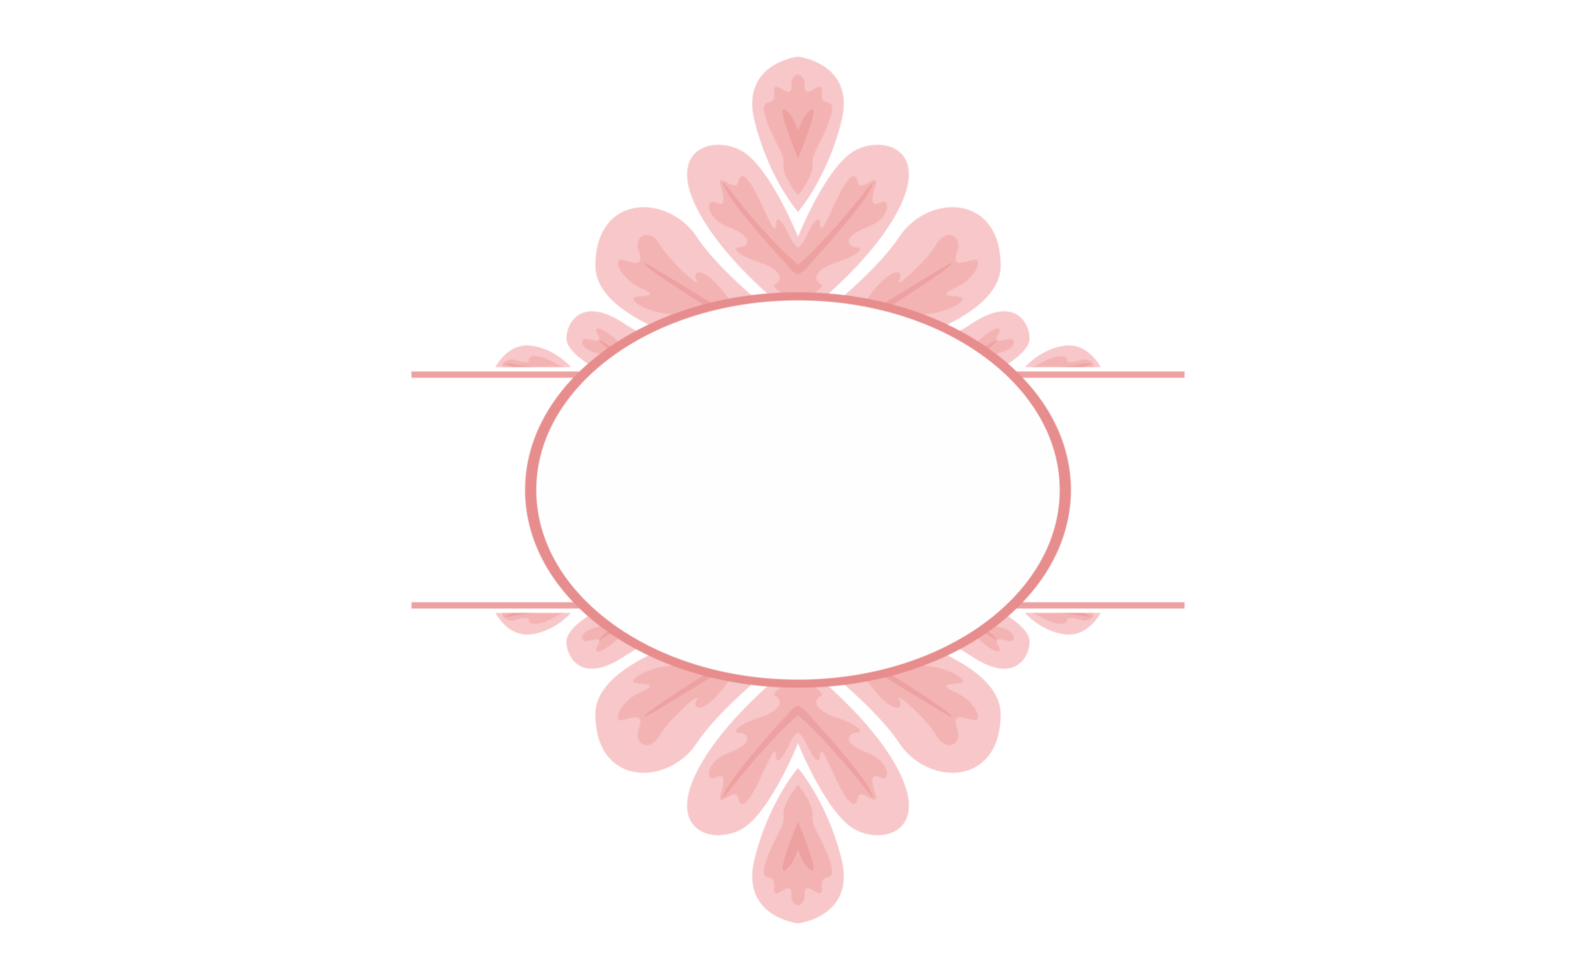 Pink Flower Petal Ornament Border Design png